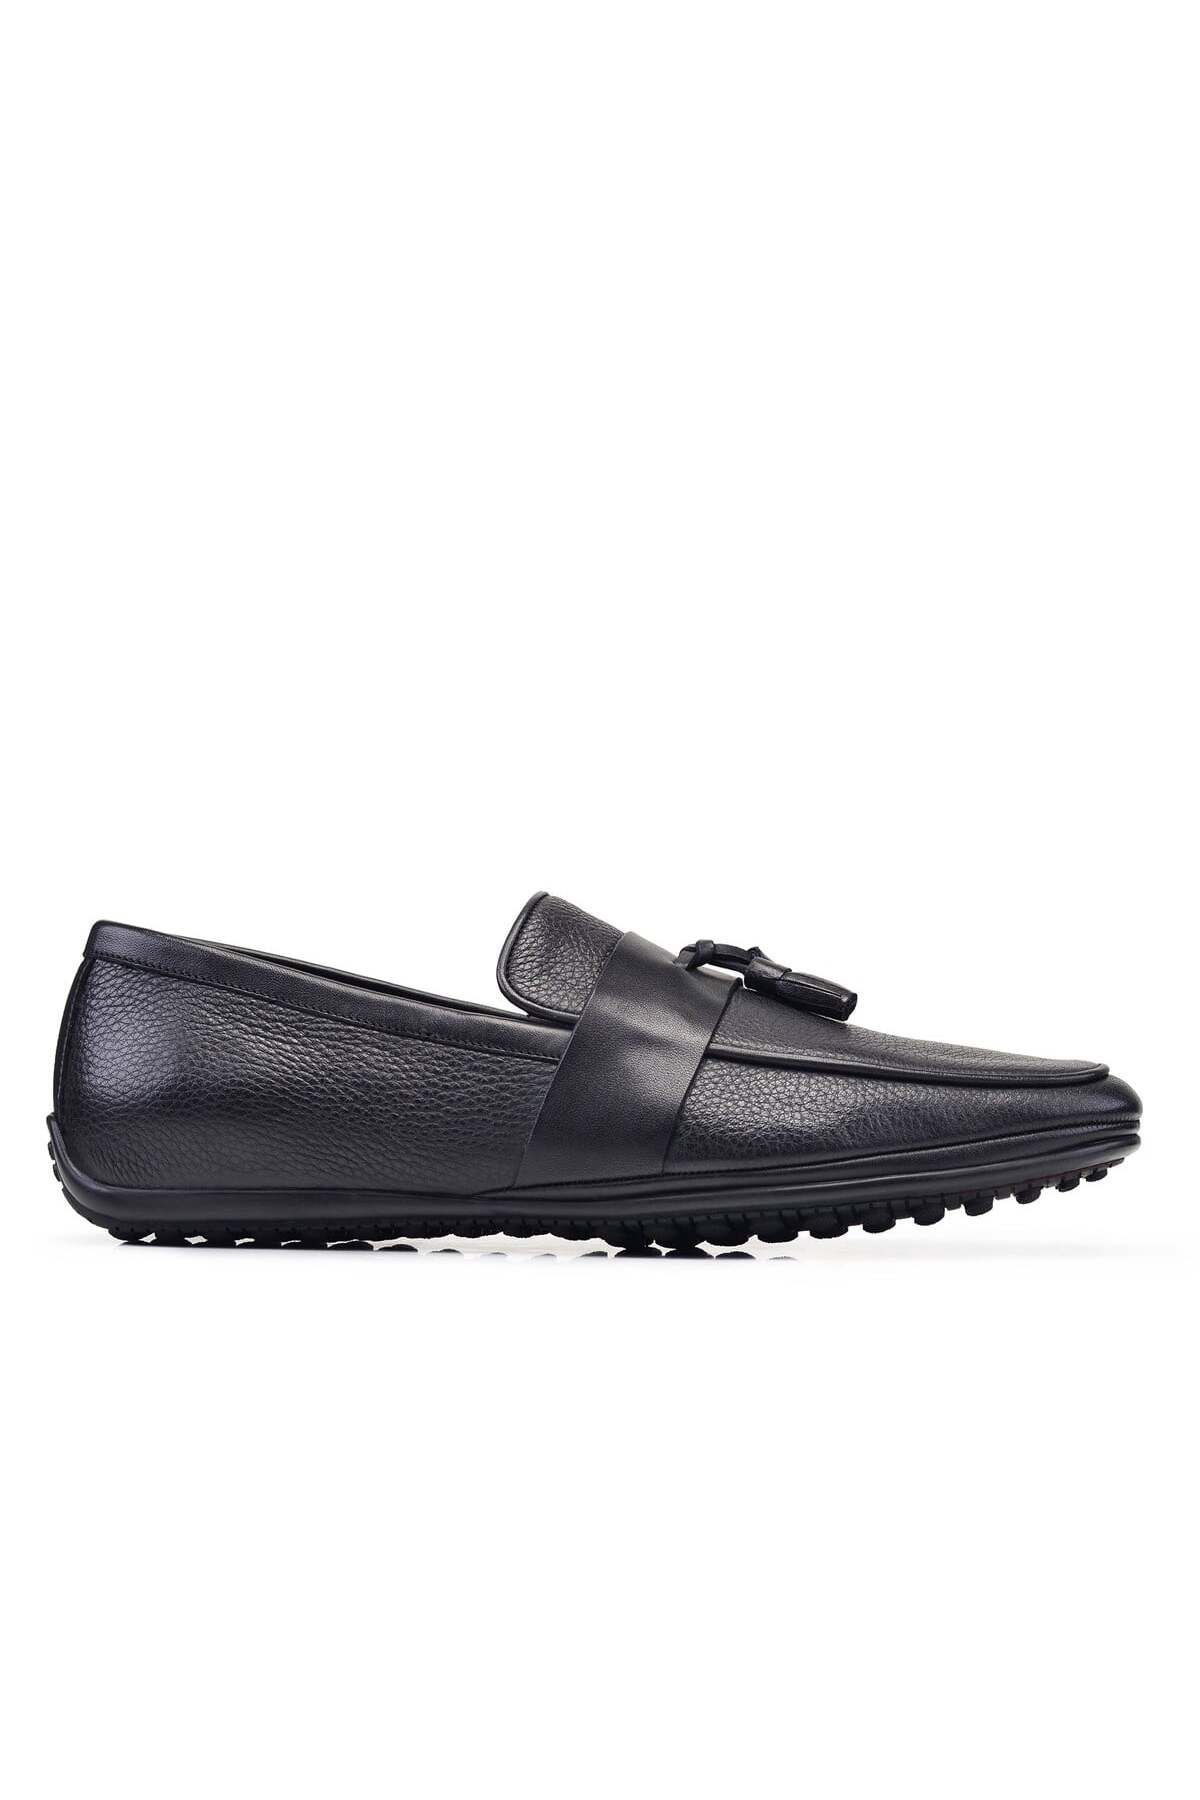 Nevzat Onay Siyah Günlük Loafer Erkek Ayakkabı -10323-